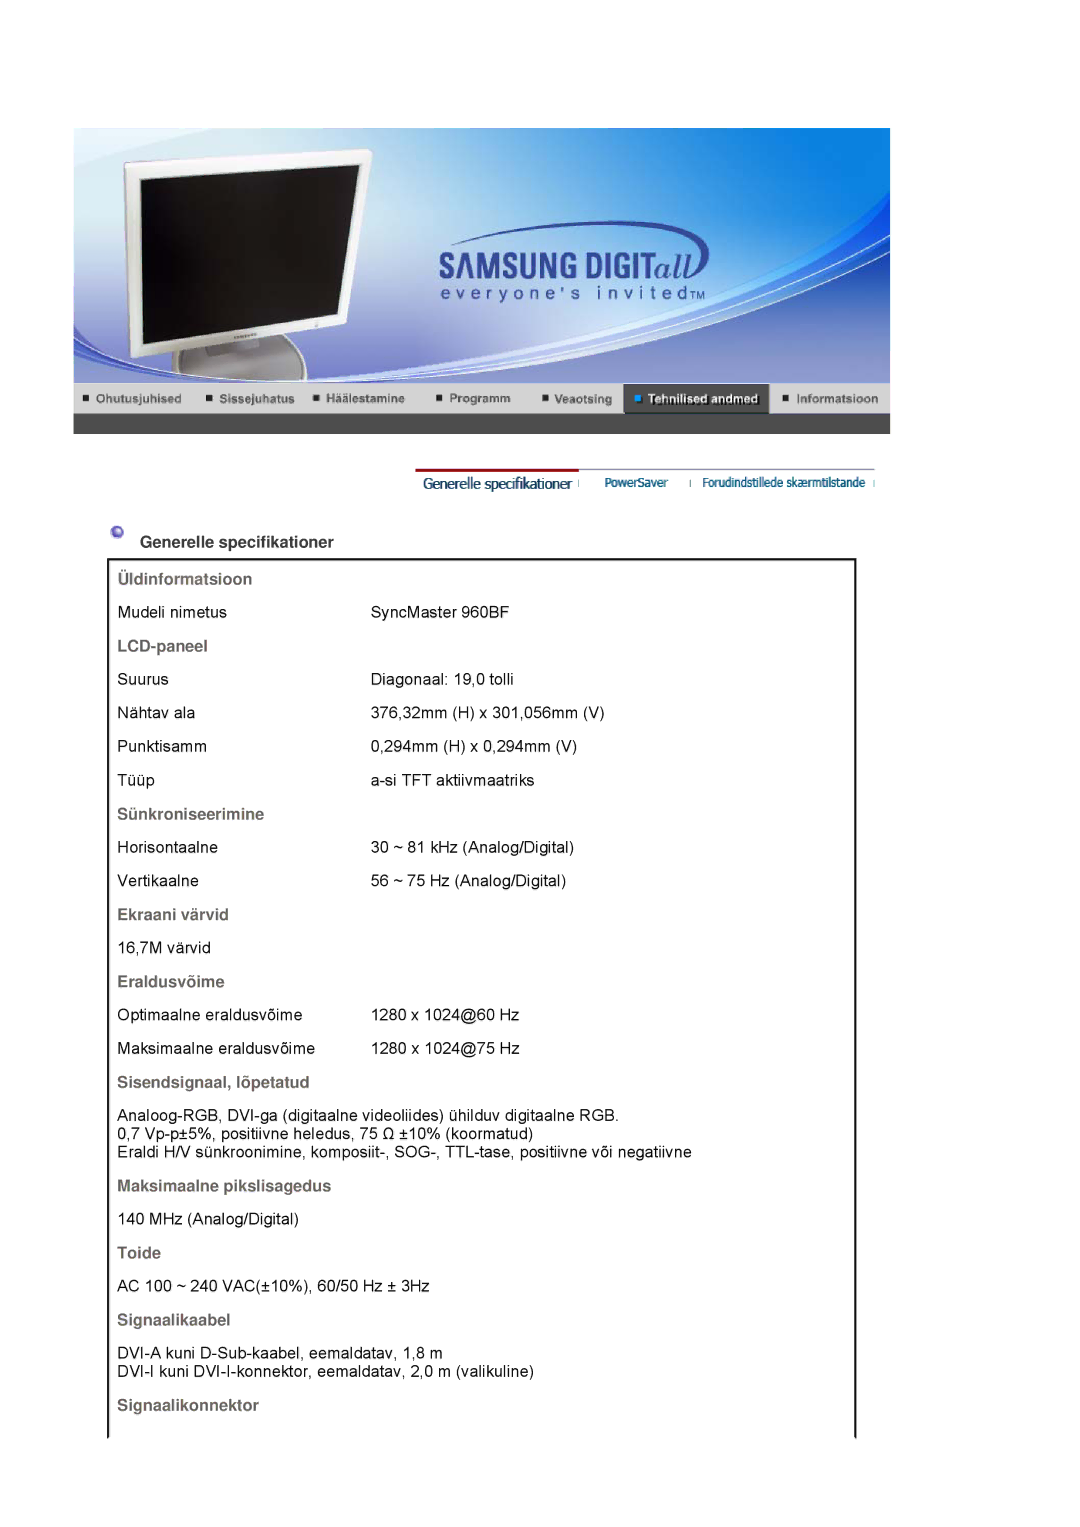 Samsung LS17HJDQHV/EDC, LS19HJDQFV/EDC, LS19HJDQHV/EDC, LS17HJDQFV/EDC manual Mudeli nimetus SyncMaster 960BF 